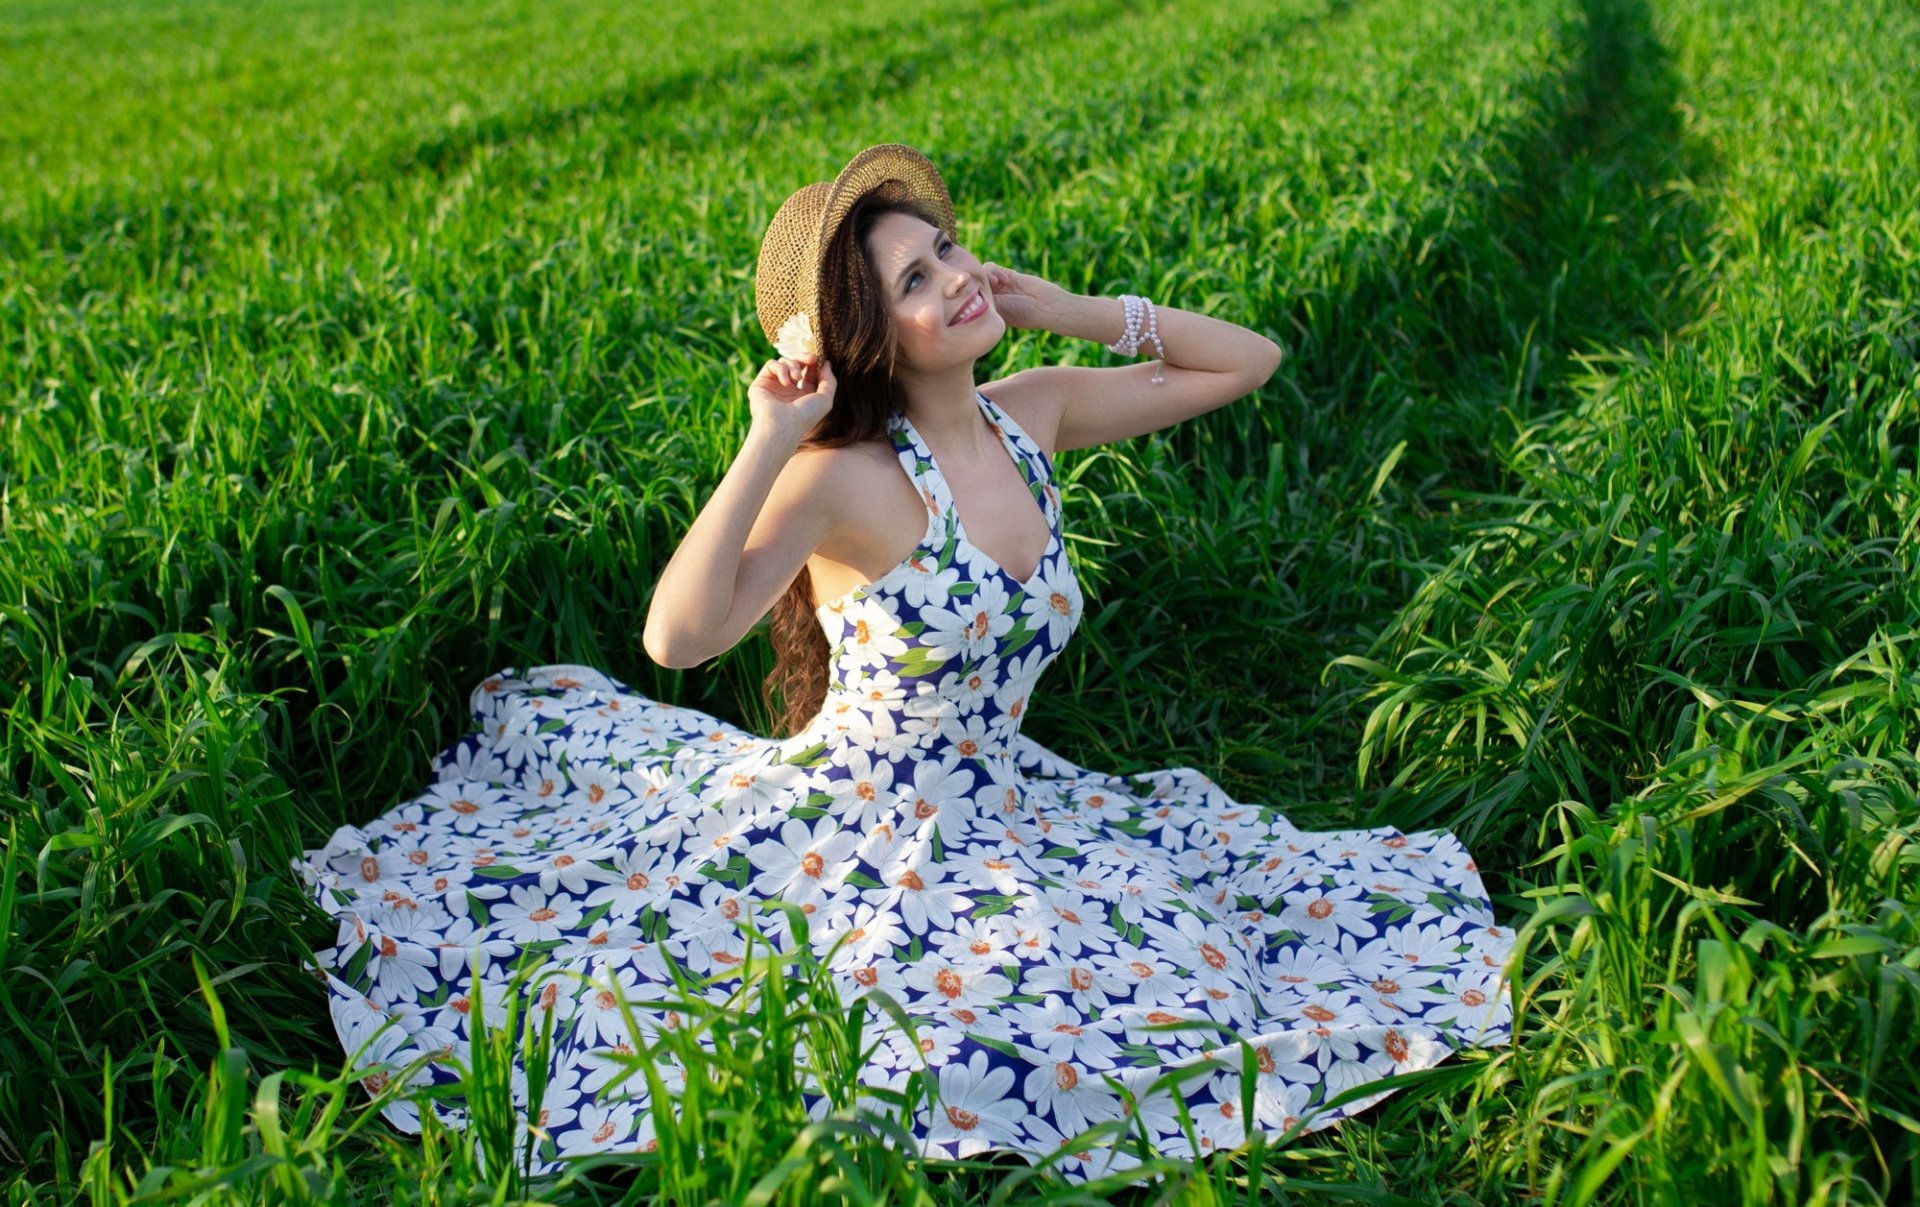 Девочка в летнем платье фото